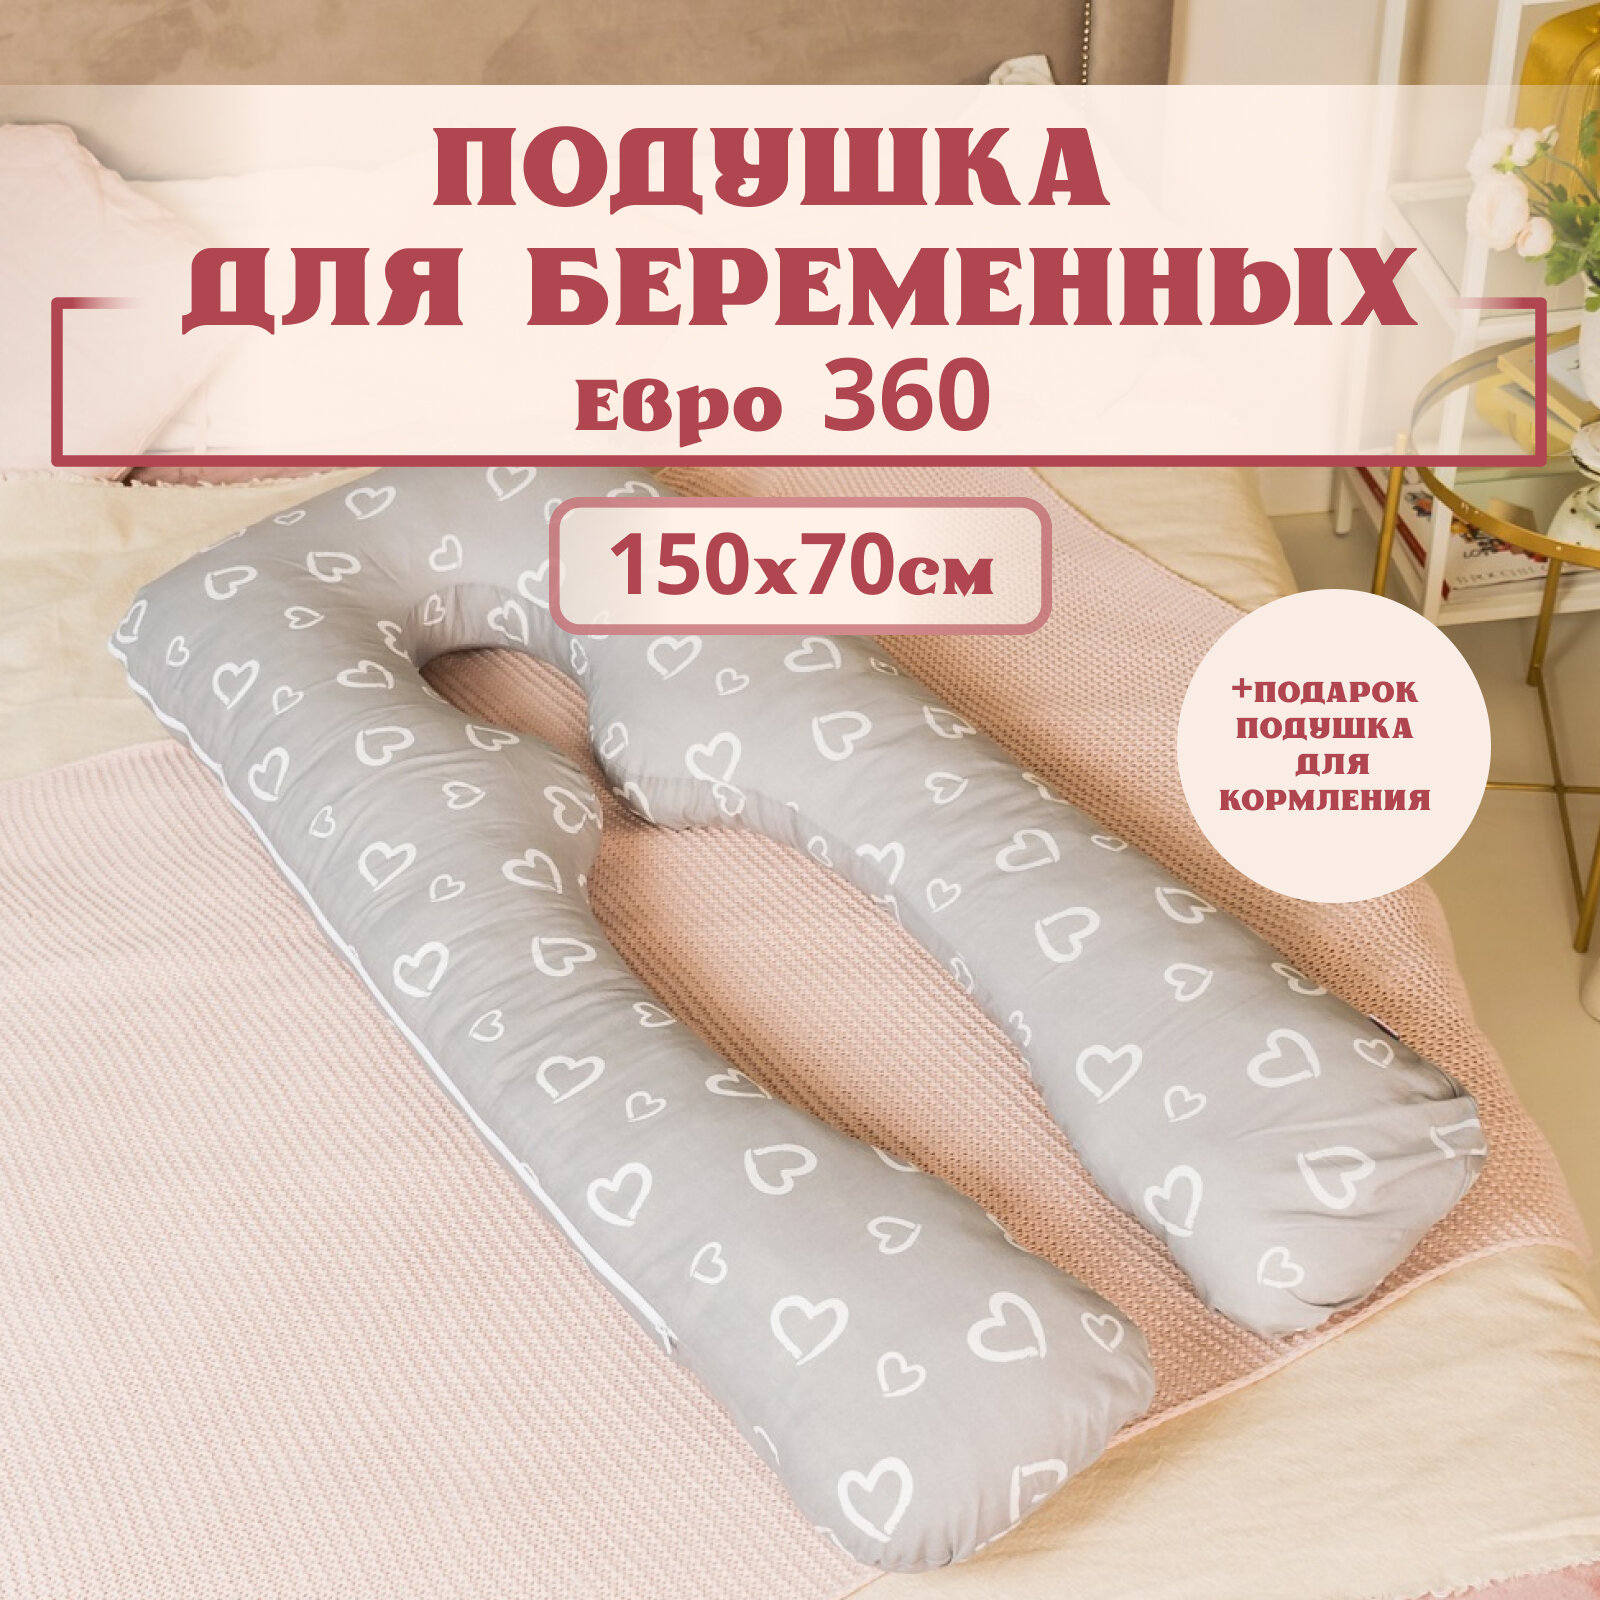 Подушка для беременных для сна и кормления анатомическая, Евро 360 150х70см, Сердечки на сером, с лебяжим пухом + Подарок подушка для кормления